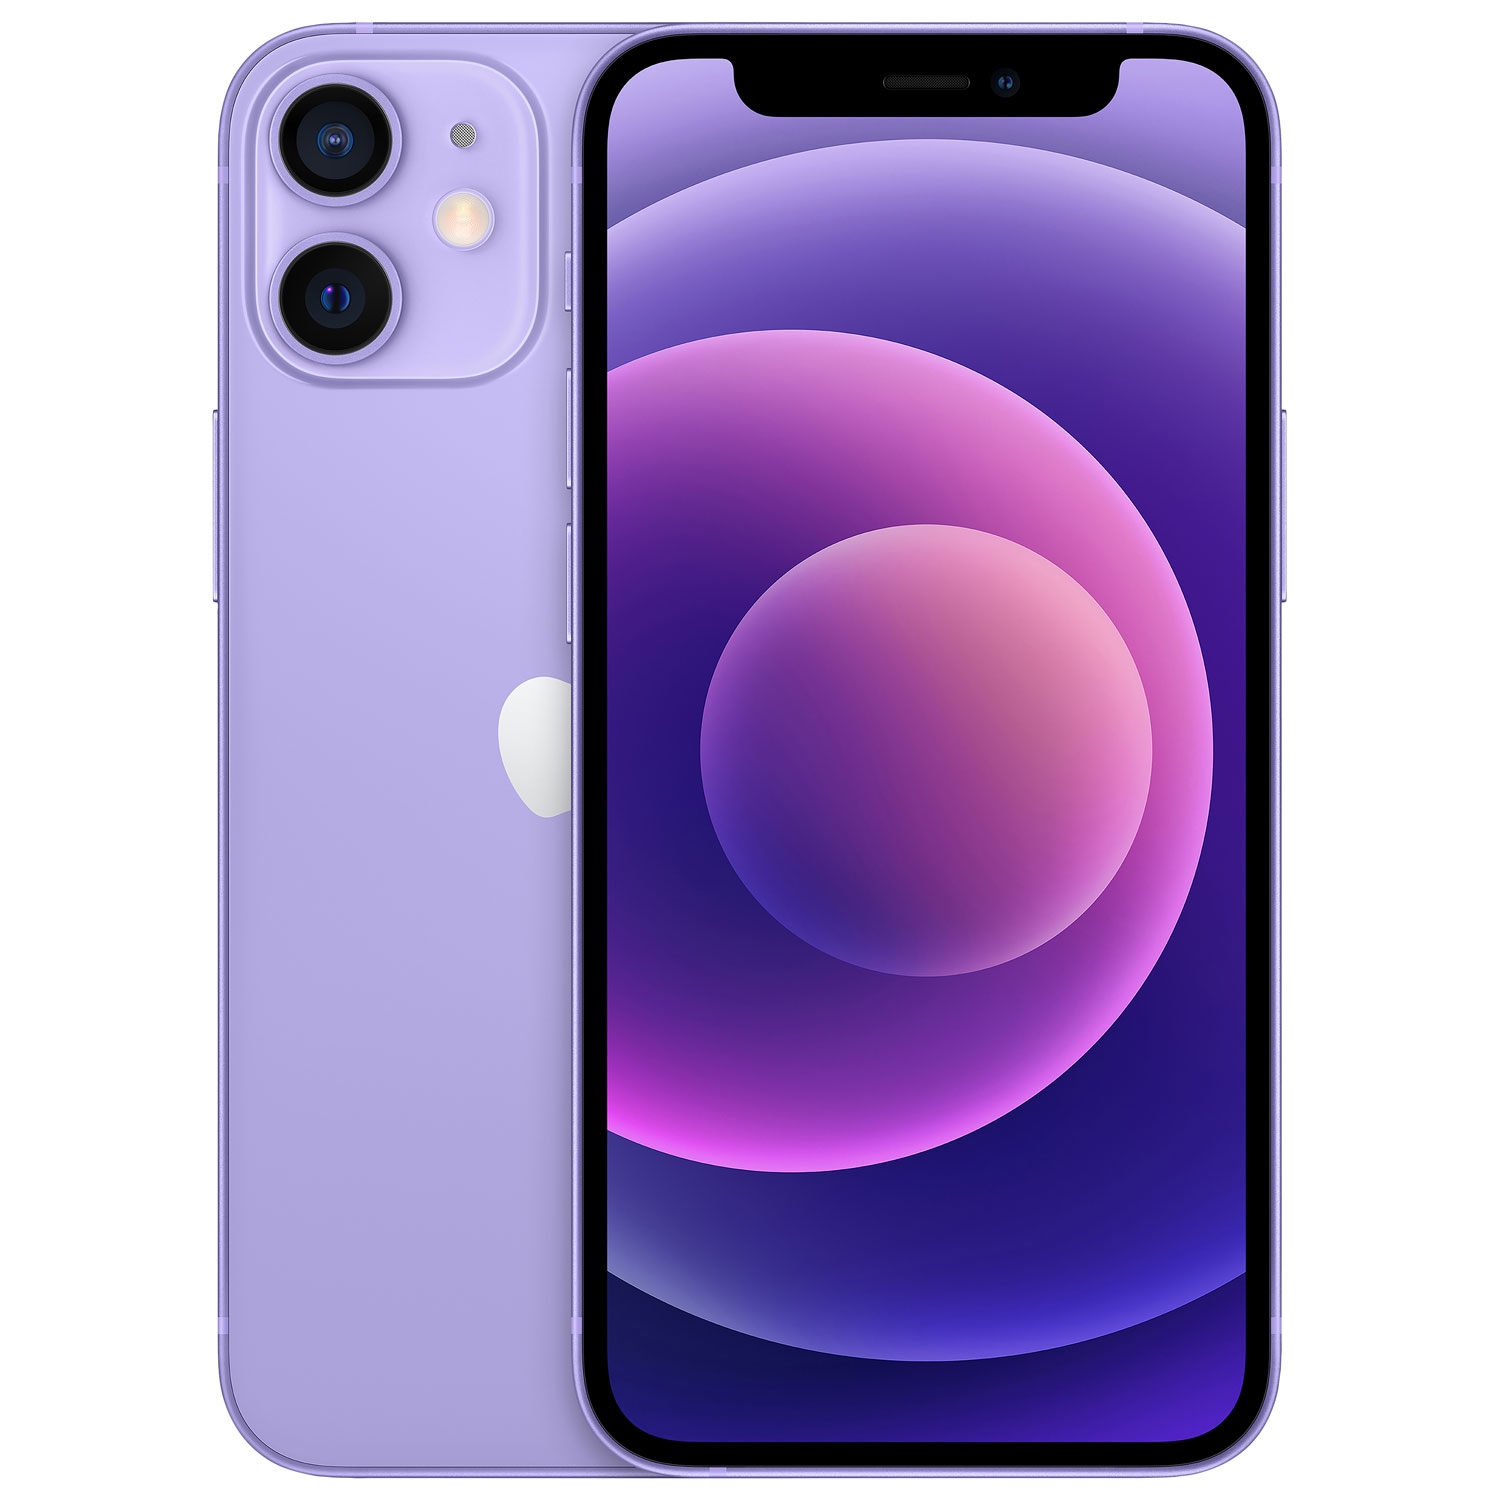 Refurbished (Fair) - Apple iPhone 12 mini 256GB - Purple - Unlocked